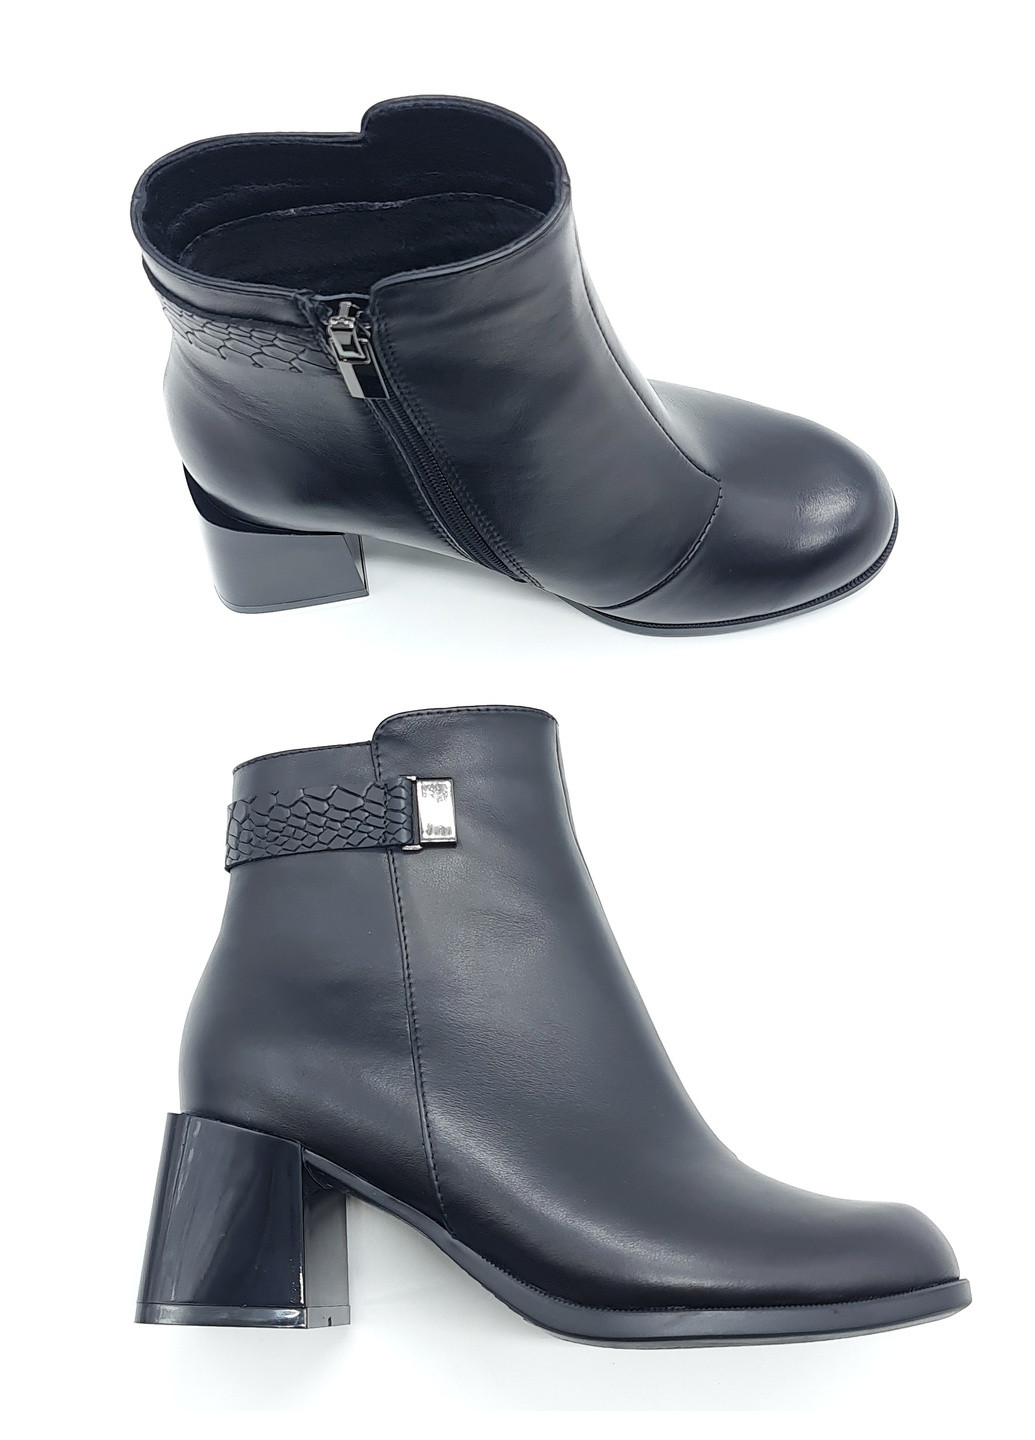 Осенние женские ботинки черные кожаные p-19-4 235 мм(р) patterns